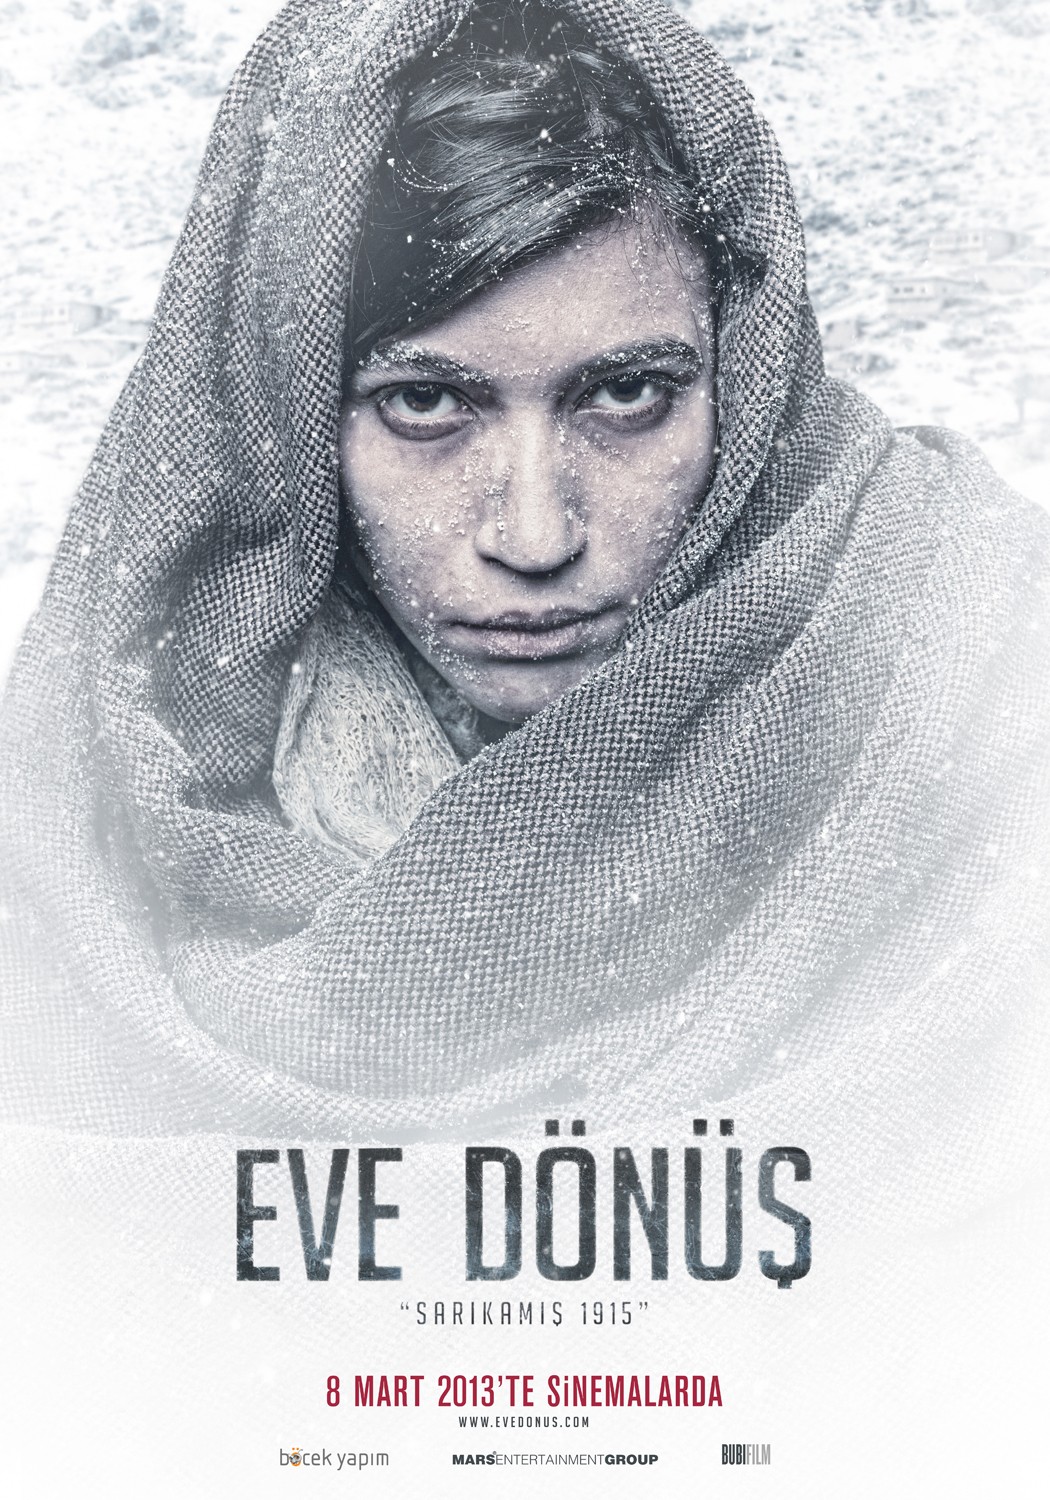 Extra Large Movie Poster Image for Eve Dönüş 'Sarıkamış 1915' (#8 of 10)